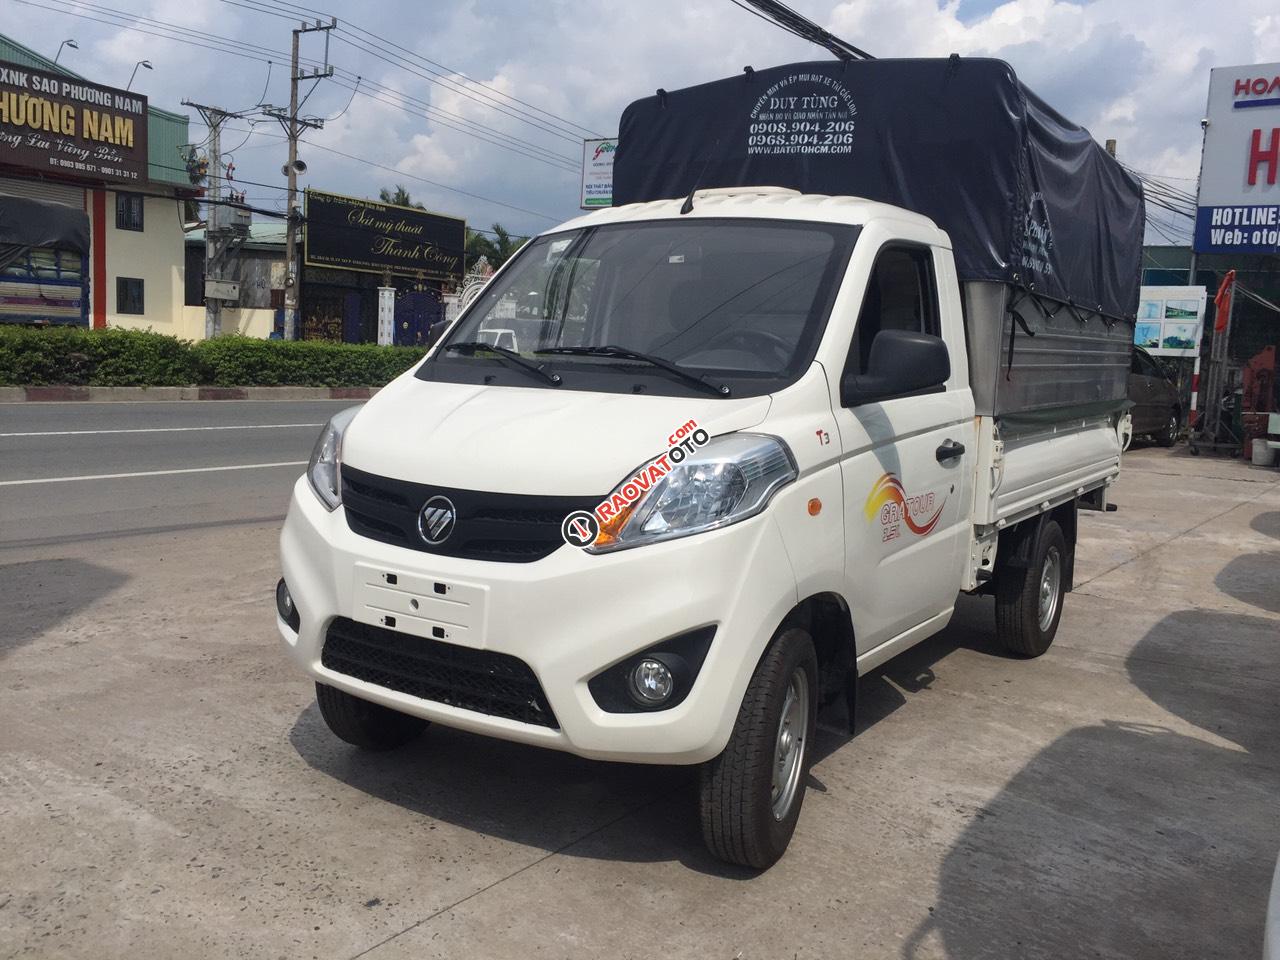 Bán xe ô tô tải, nhãn hiệu Thacco Foton 990kg, giá tốt cạnh tranh 2019-0